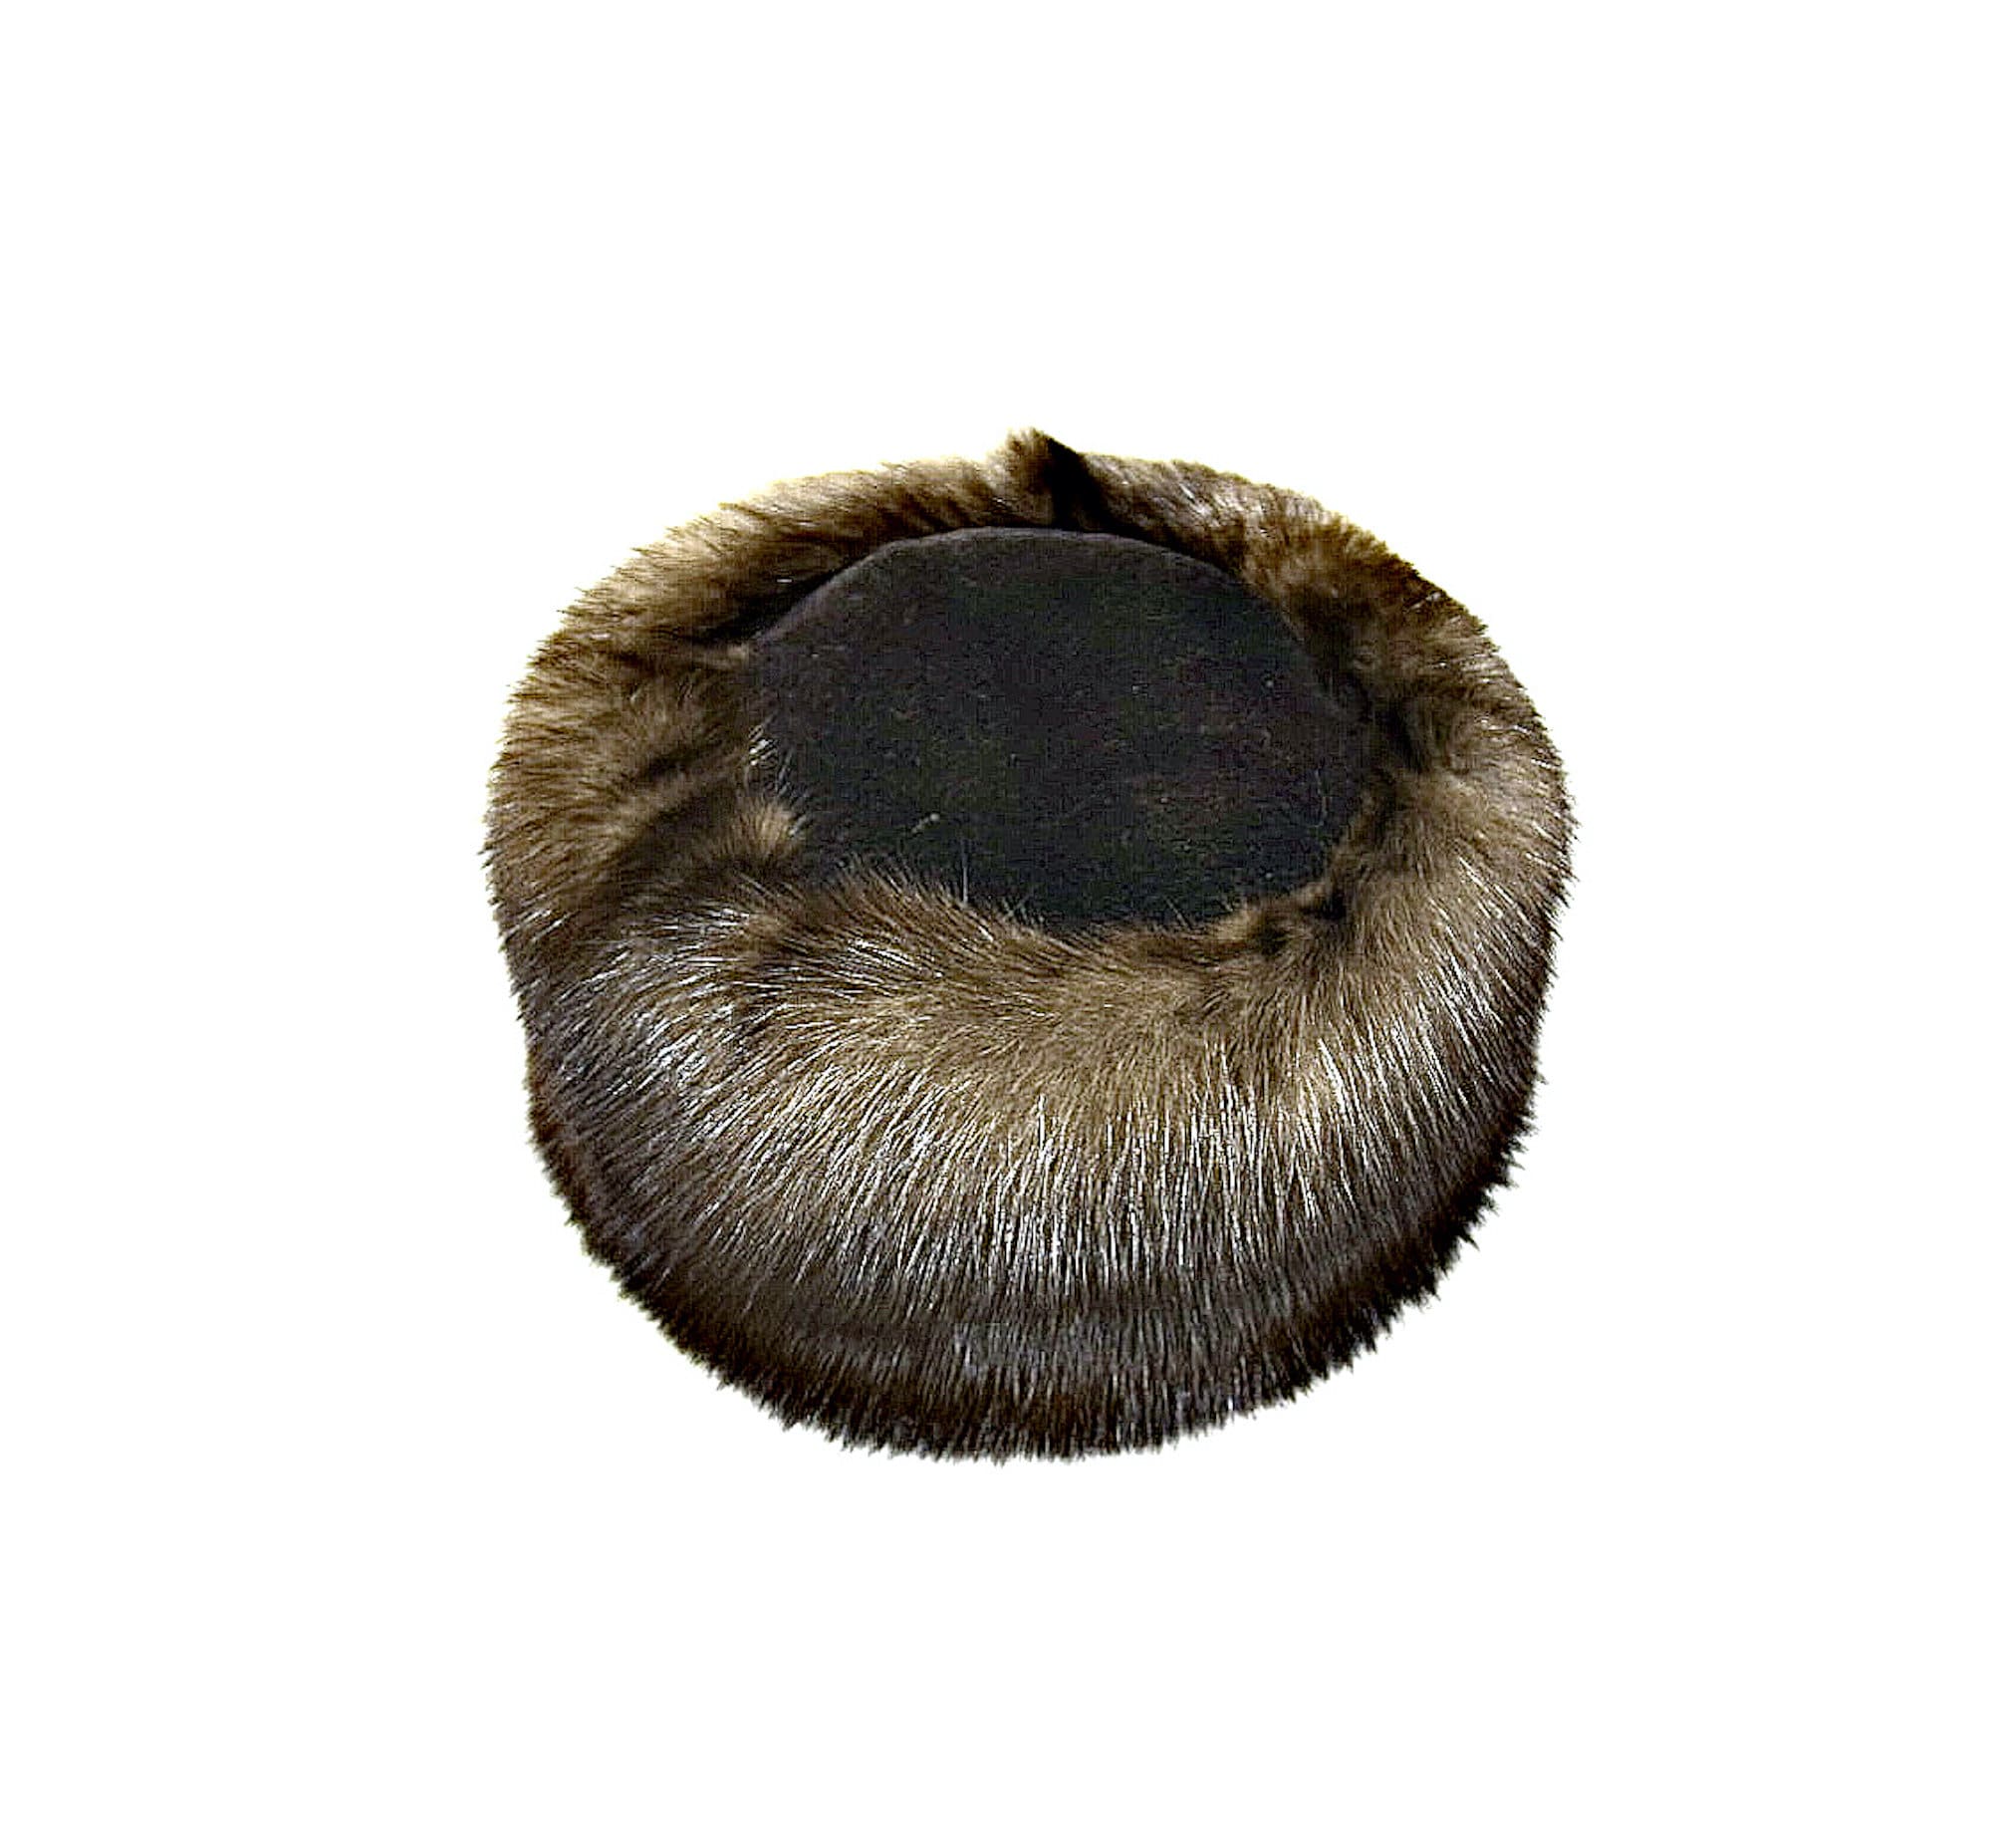 Sable fur hat - barguzin roller hat - queen luxury hat